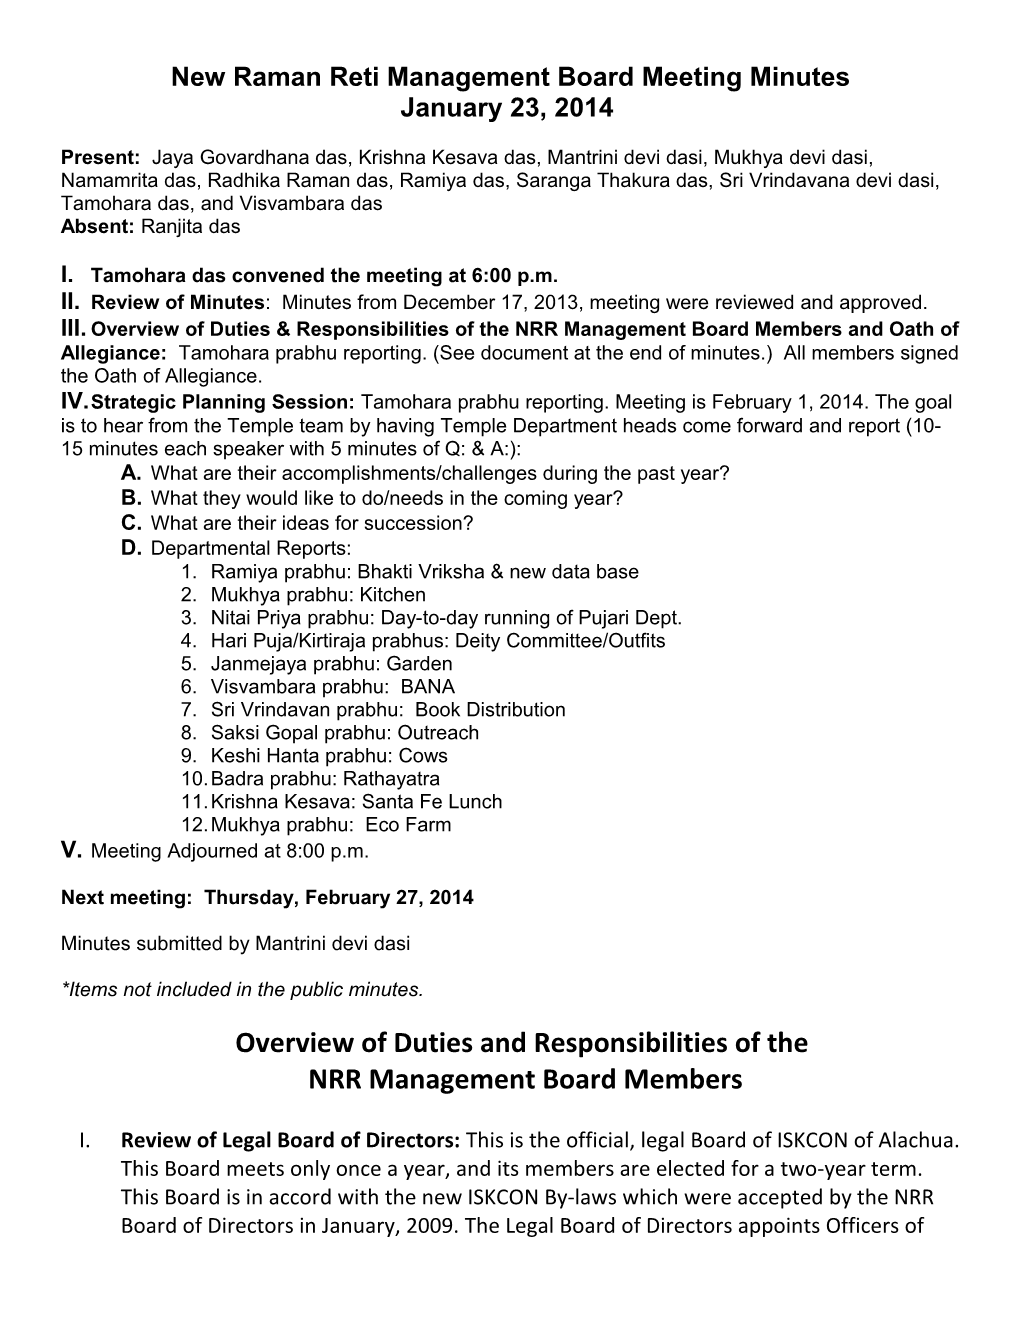 New Raman Reti Board Meeting Minutes